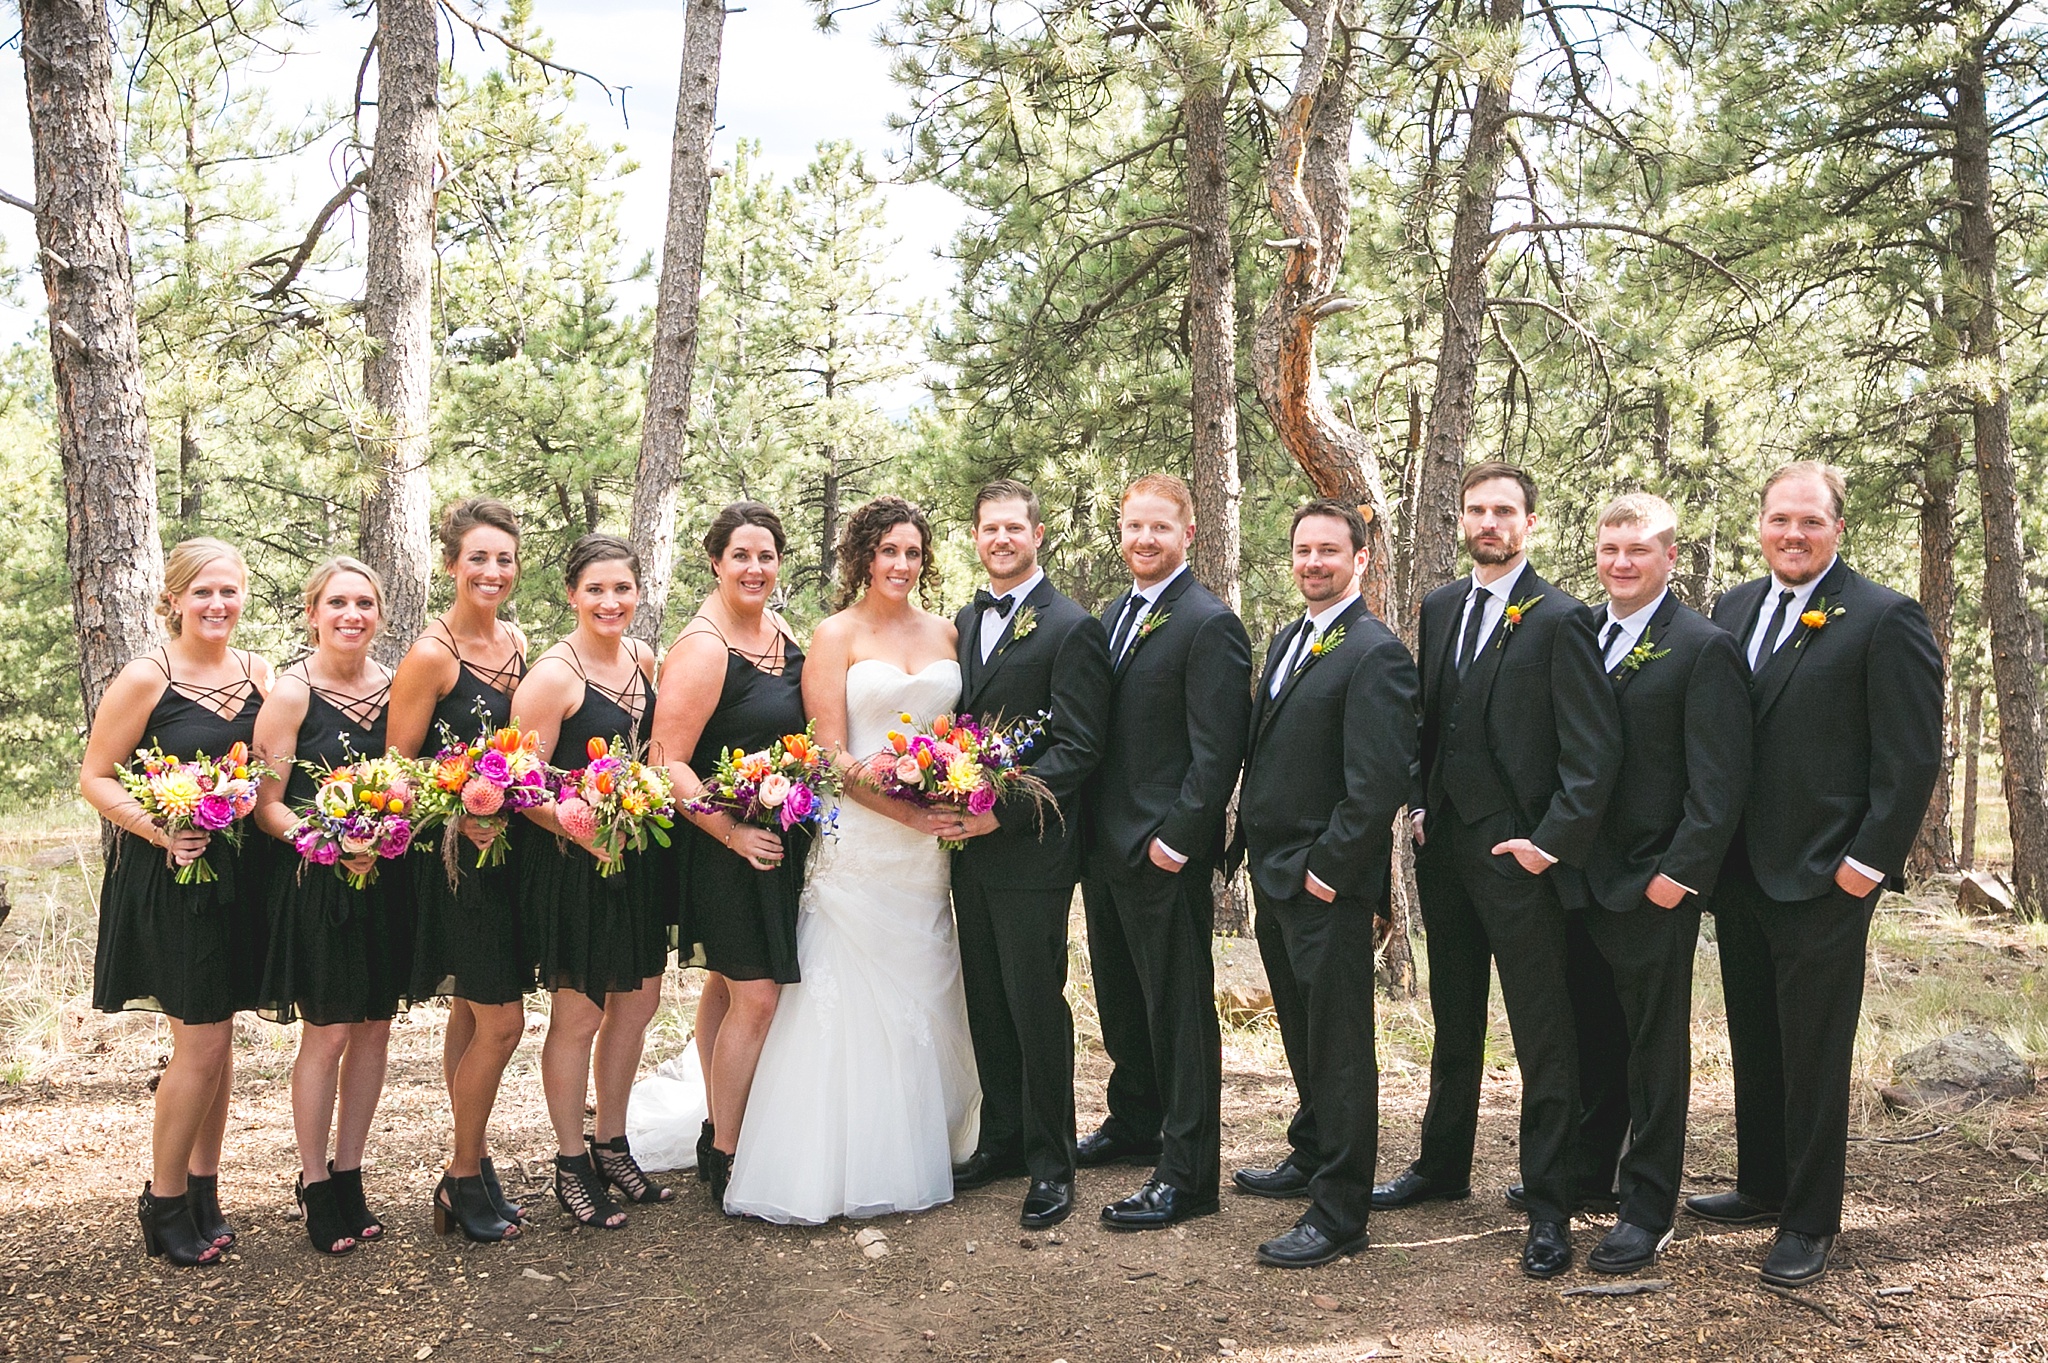 Kellie & Brian's Boettcher Mansion Wedding in Golden, Colorado